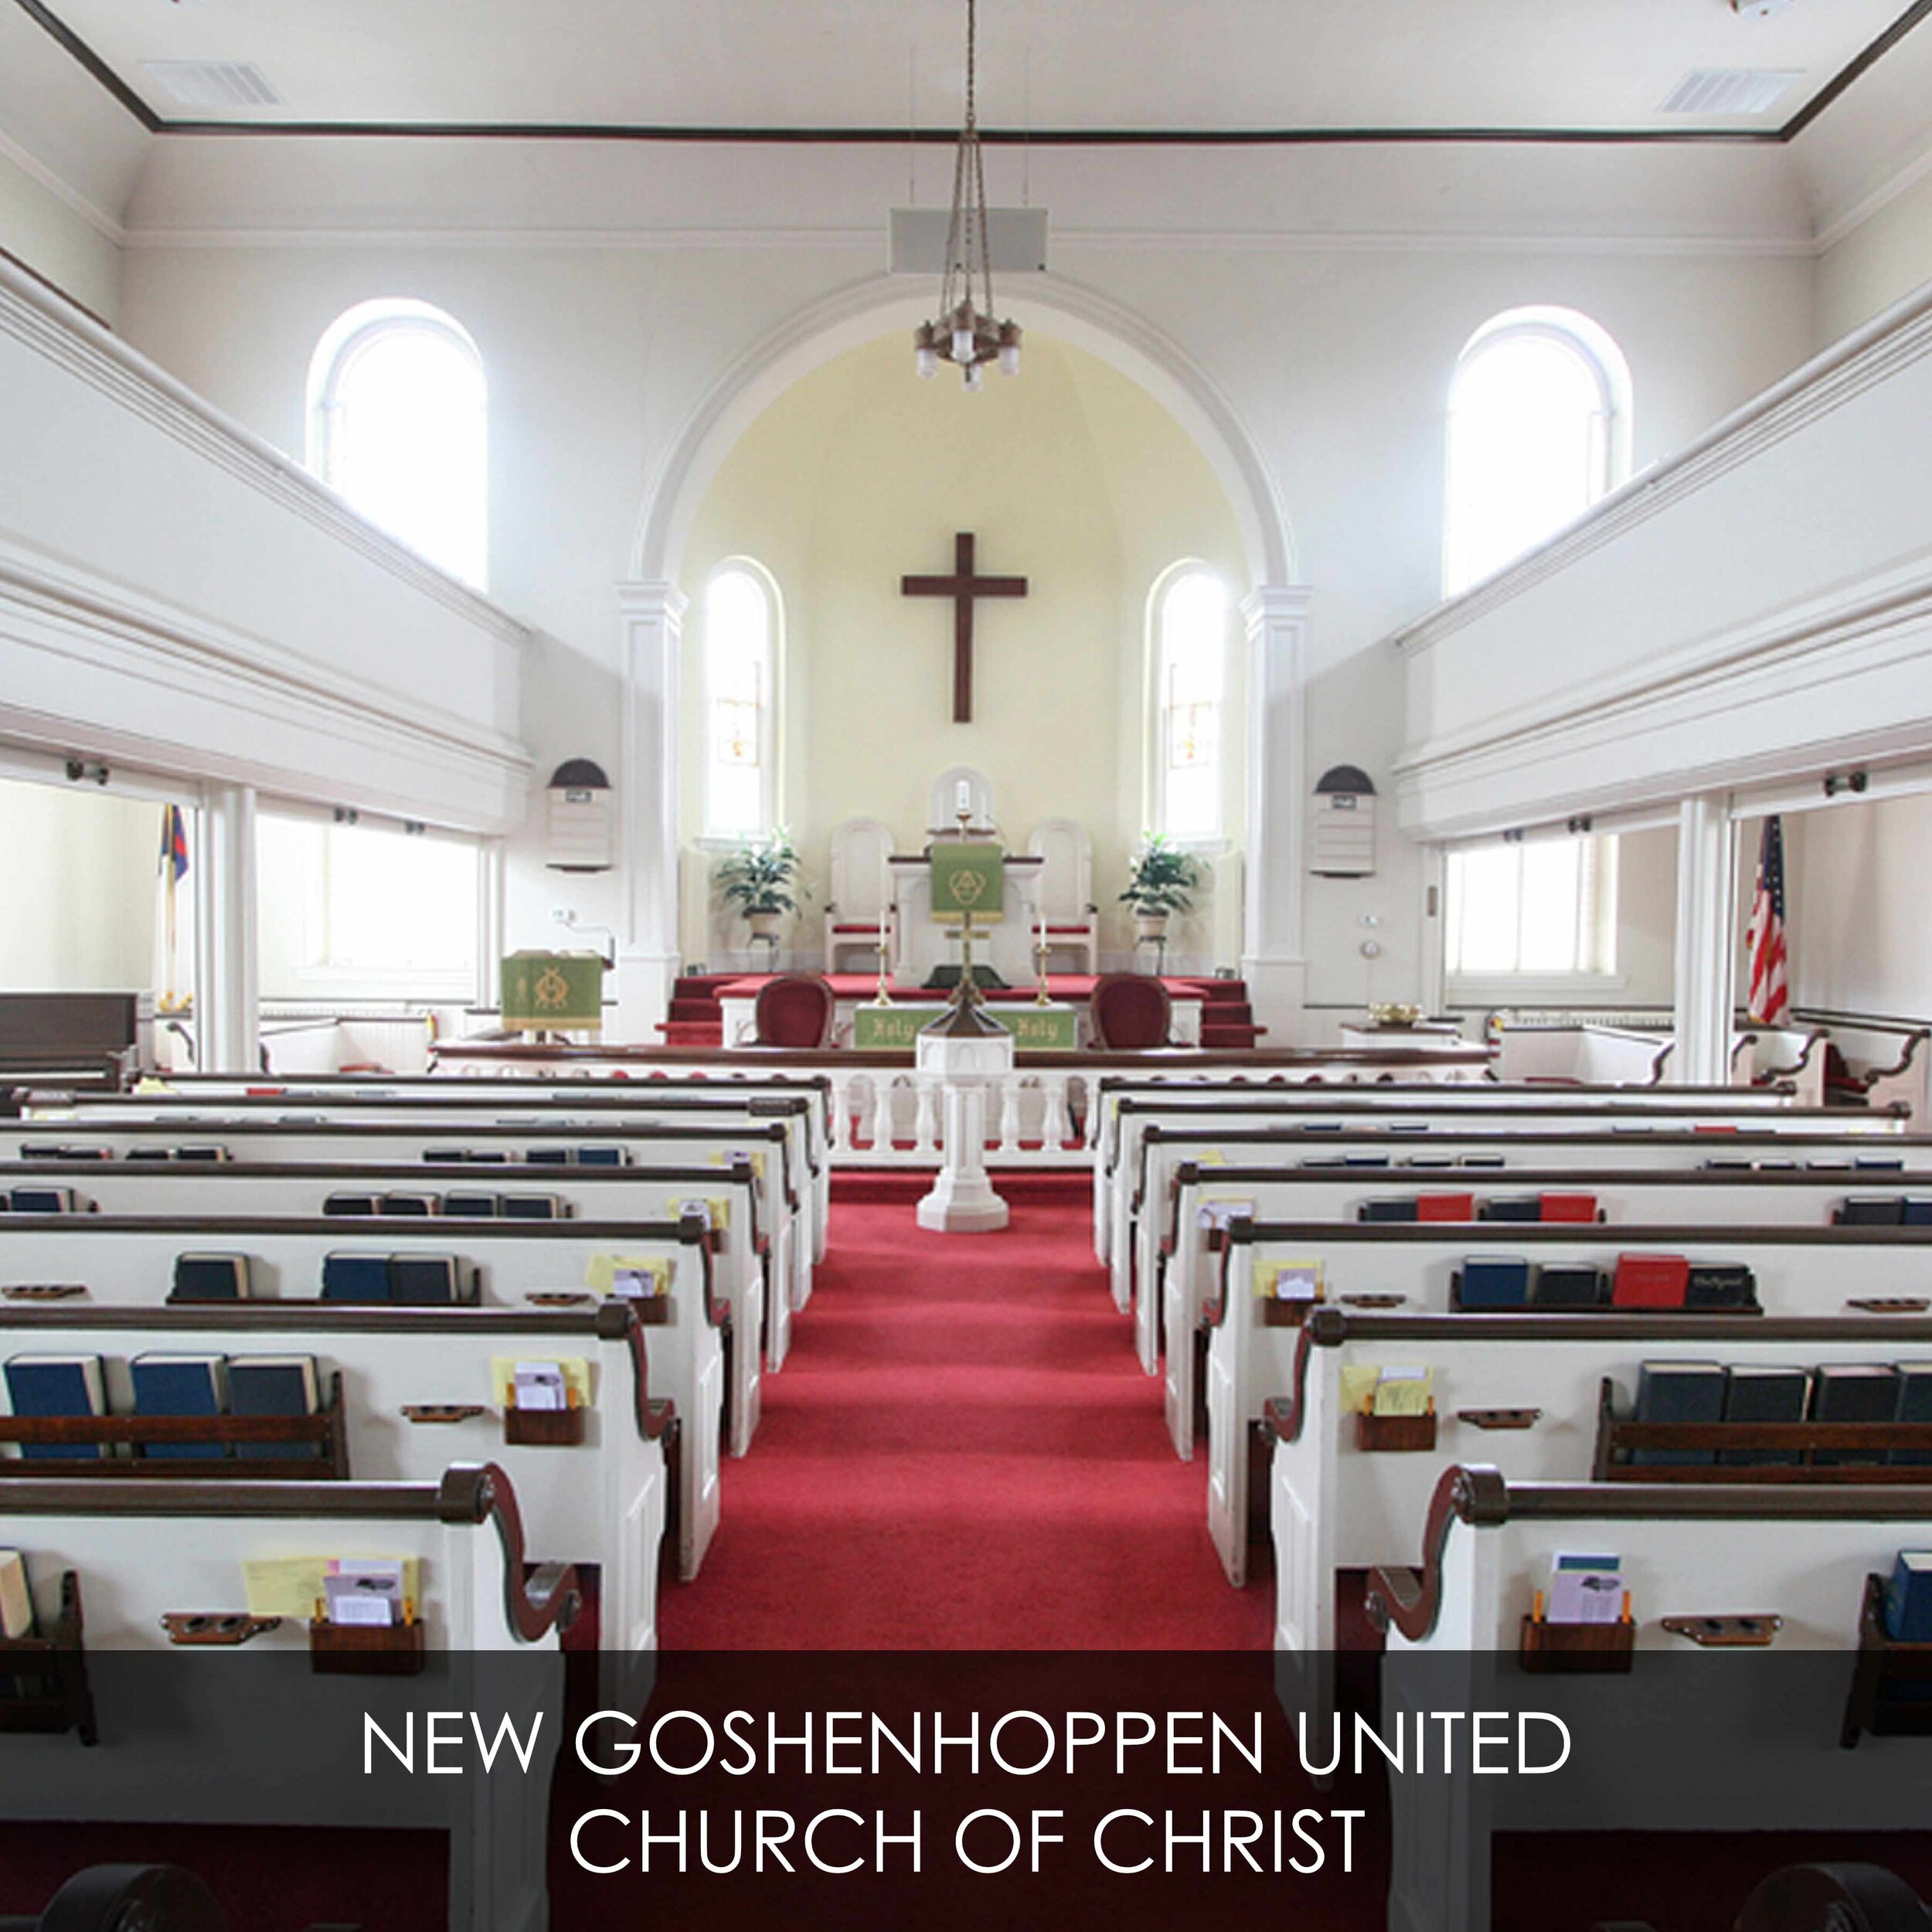 NEW GOSHENHOPPEN UNITED CHURCH OF CHRIST.jpg